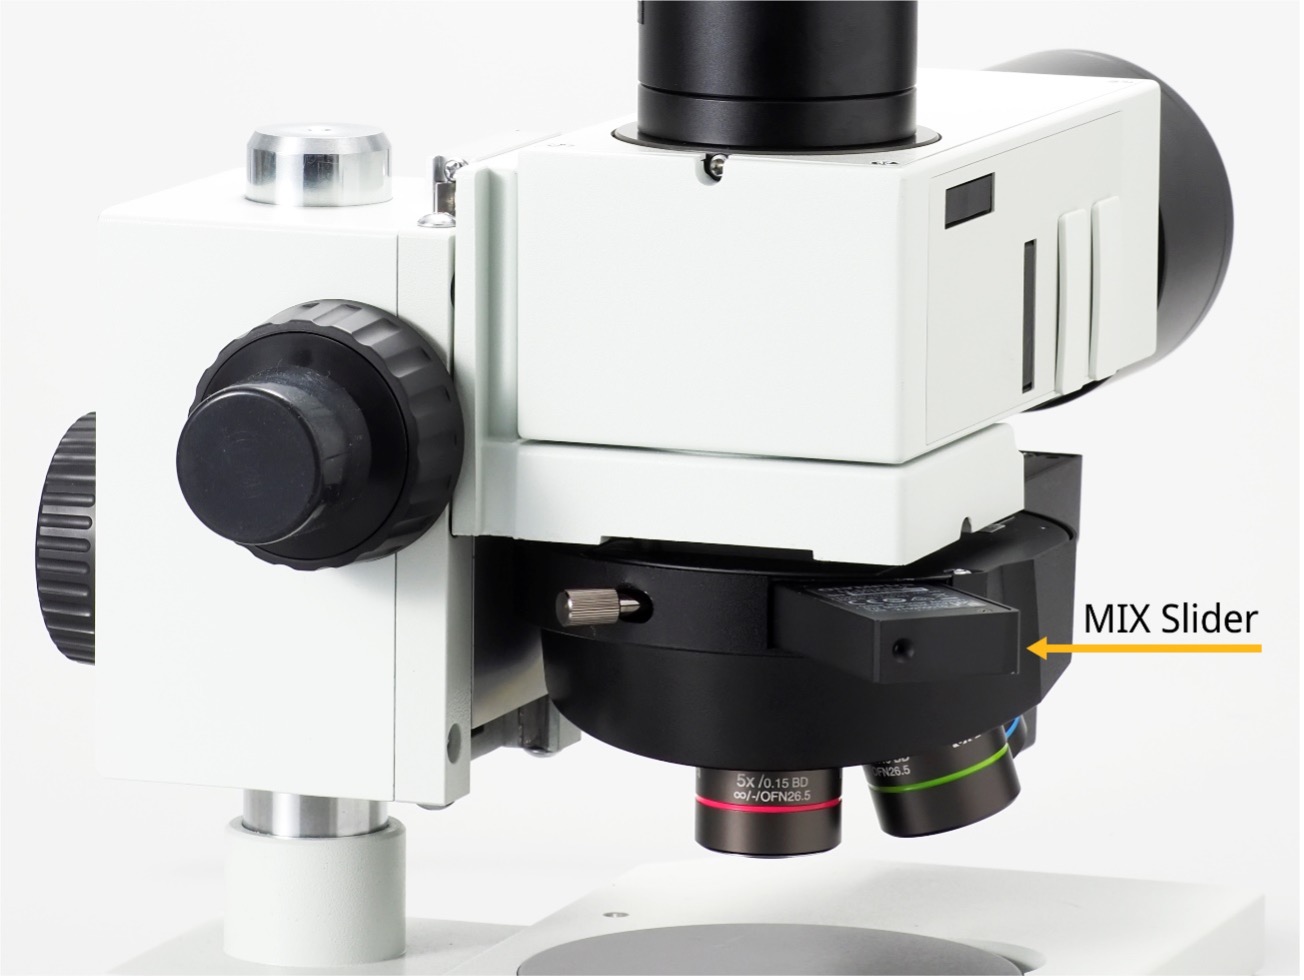 Microscopio compacto equipado con la observación MIX